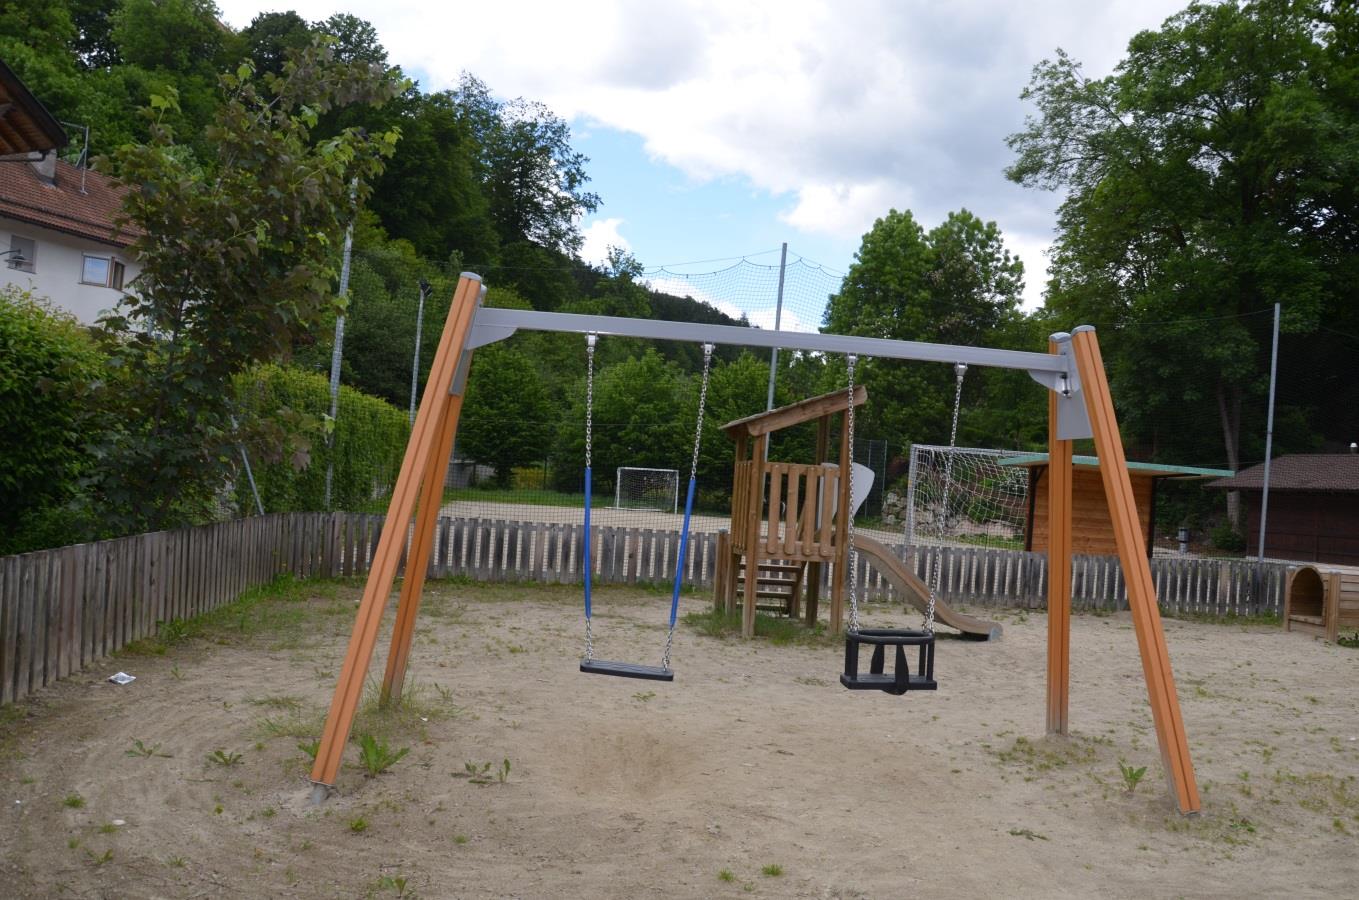 Children's Playground Ehrenburg